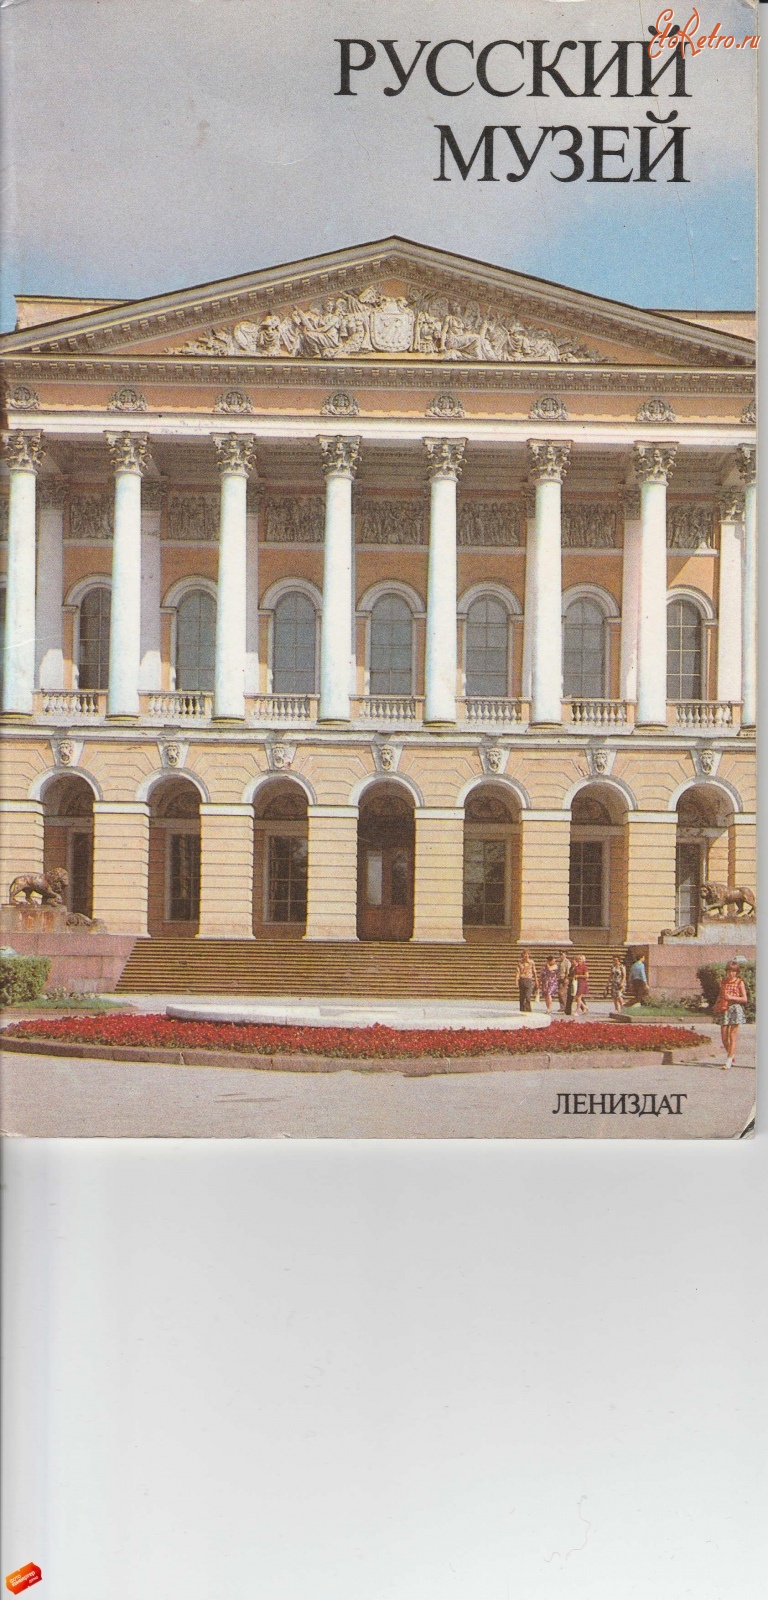 Разное - Русский музей (проспект)